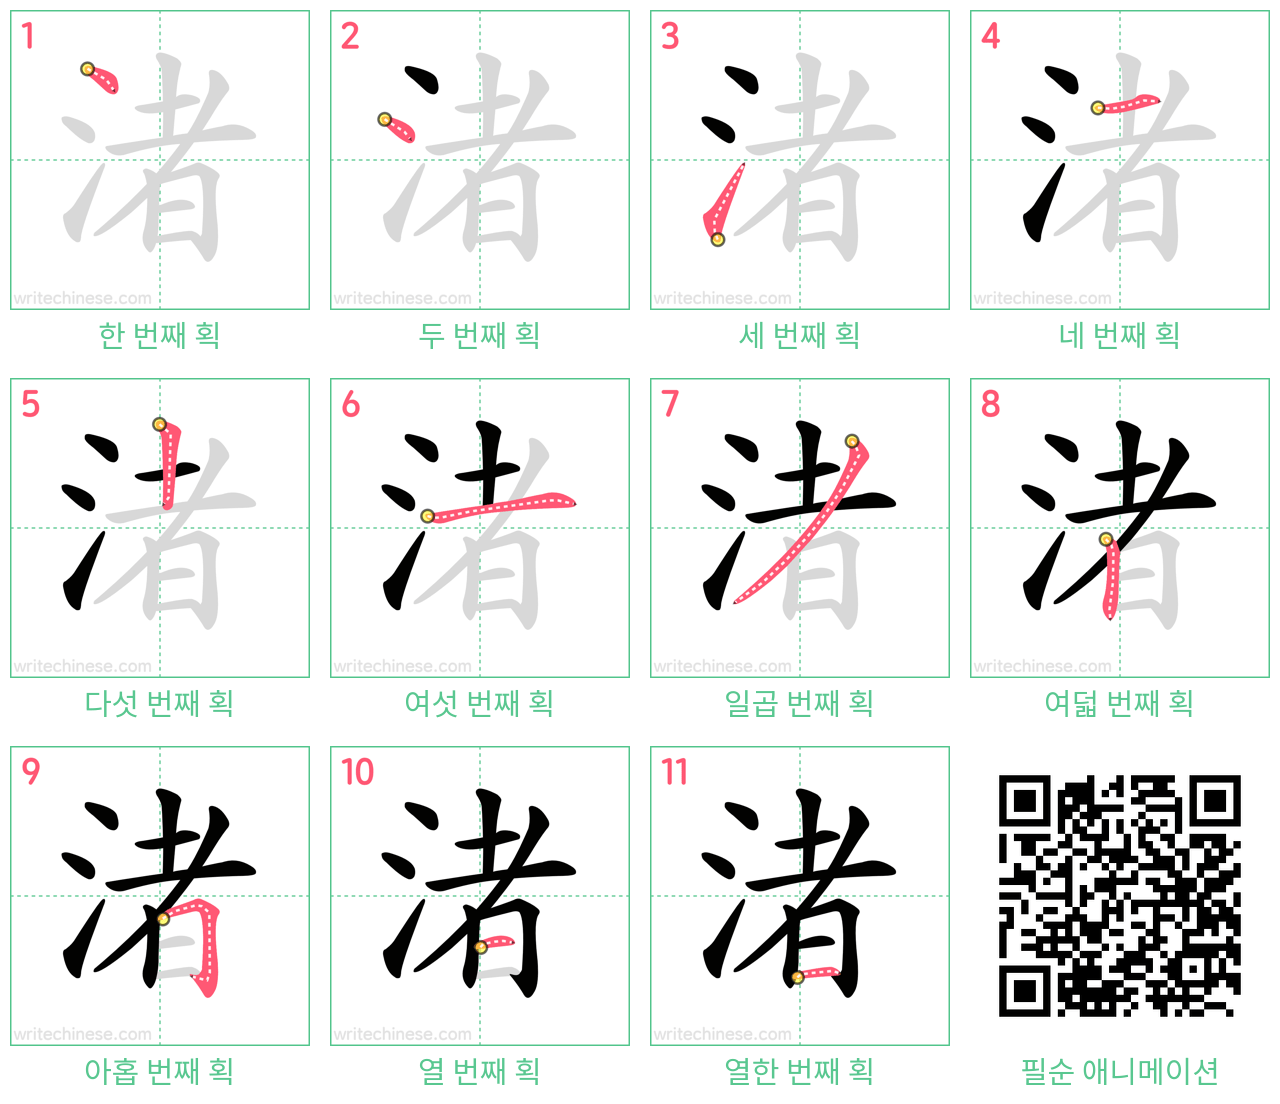 渚 step-by-step stroke order diagrams